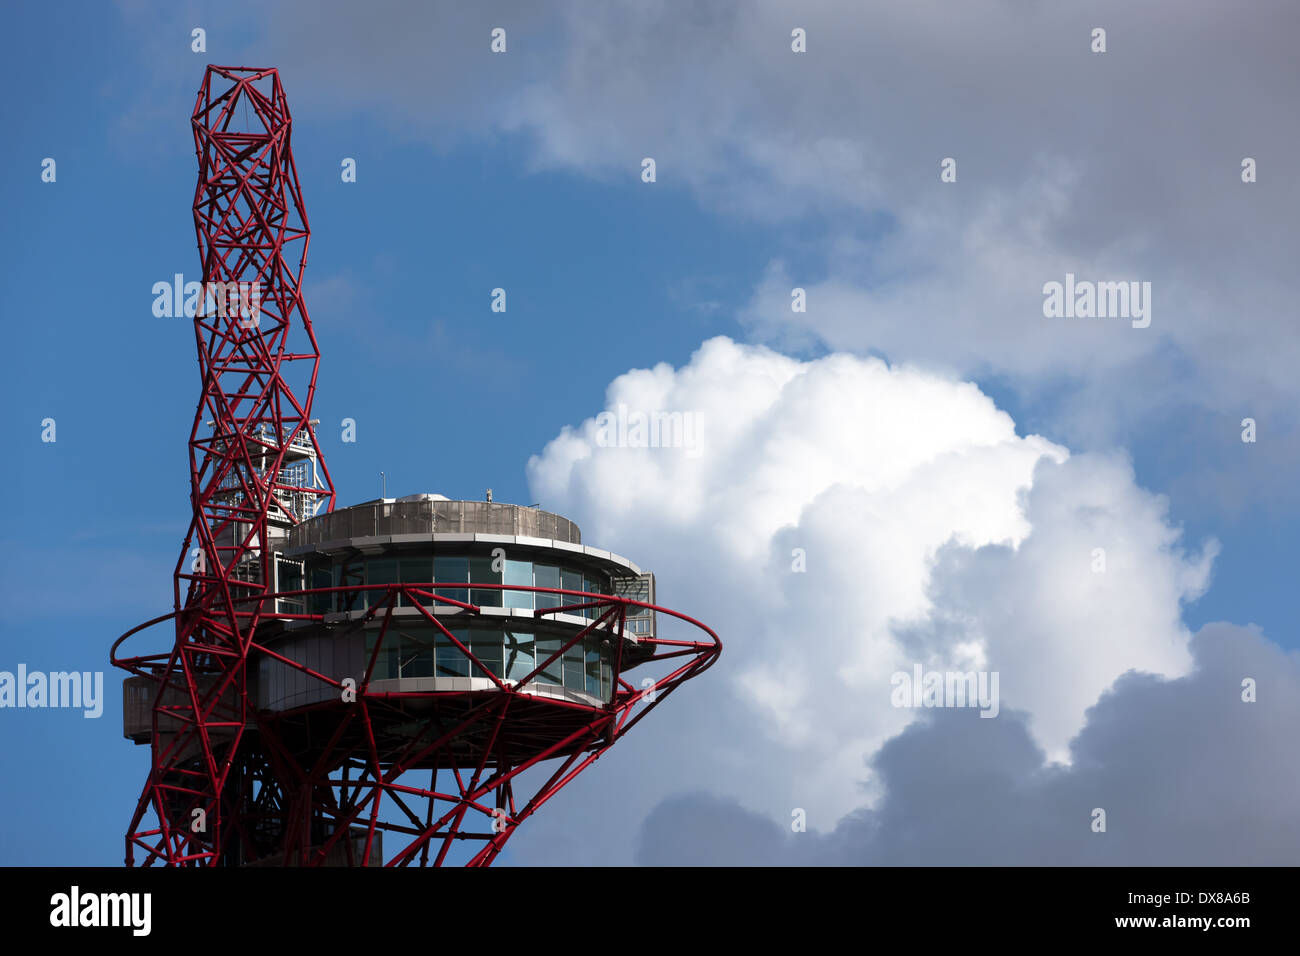 Vue de la partie supérieure de l'orbite d'ArcelorMittal, dans le Queen Elizabeth Olympic Park, Stratford, London. Banque D'Images